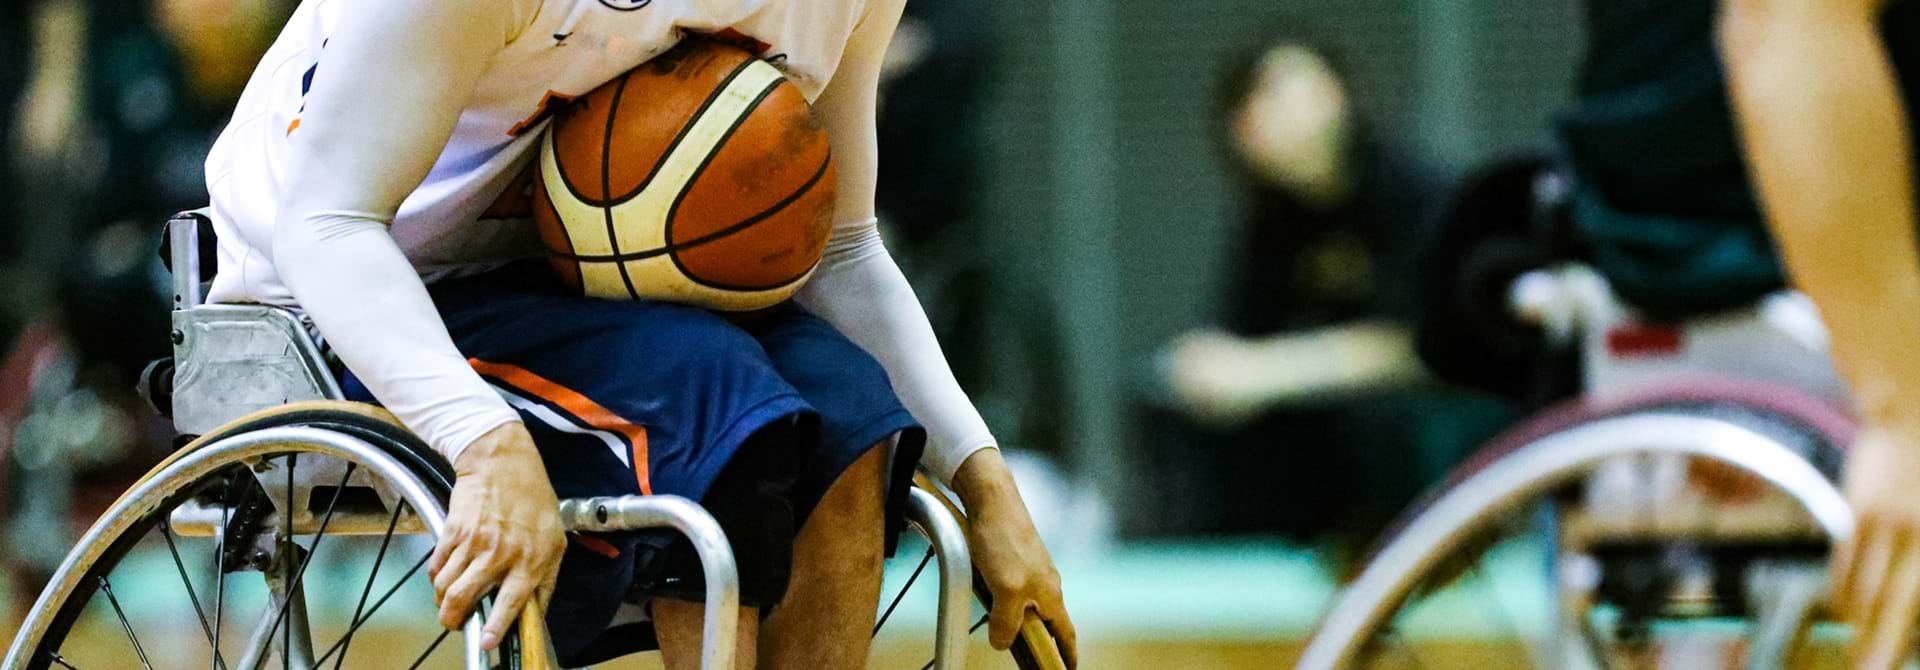 Basket Kørestol Web